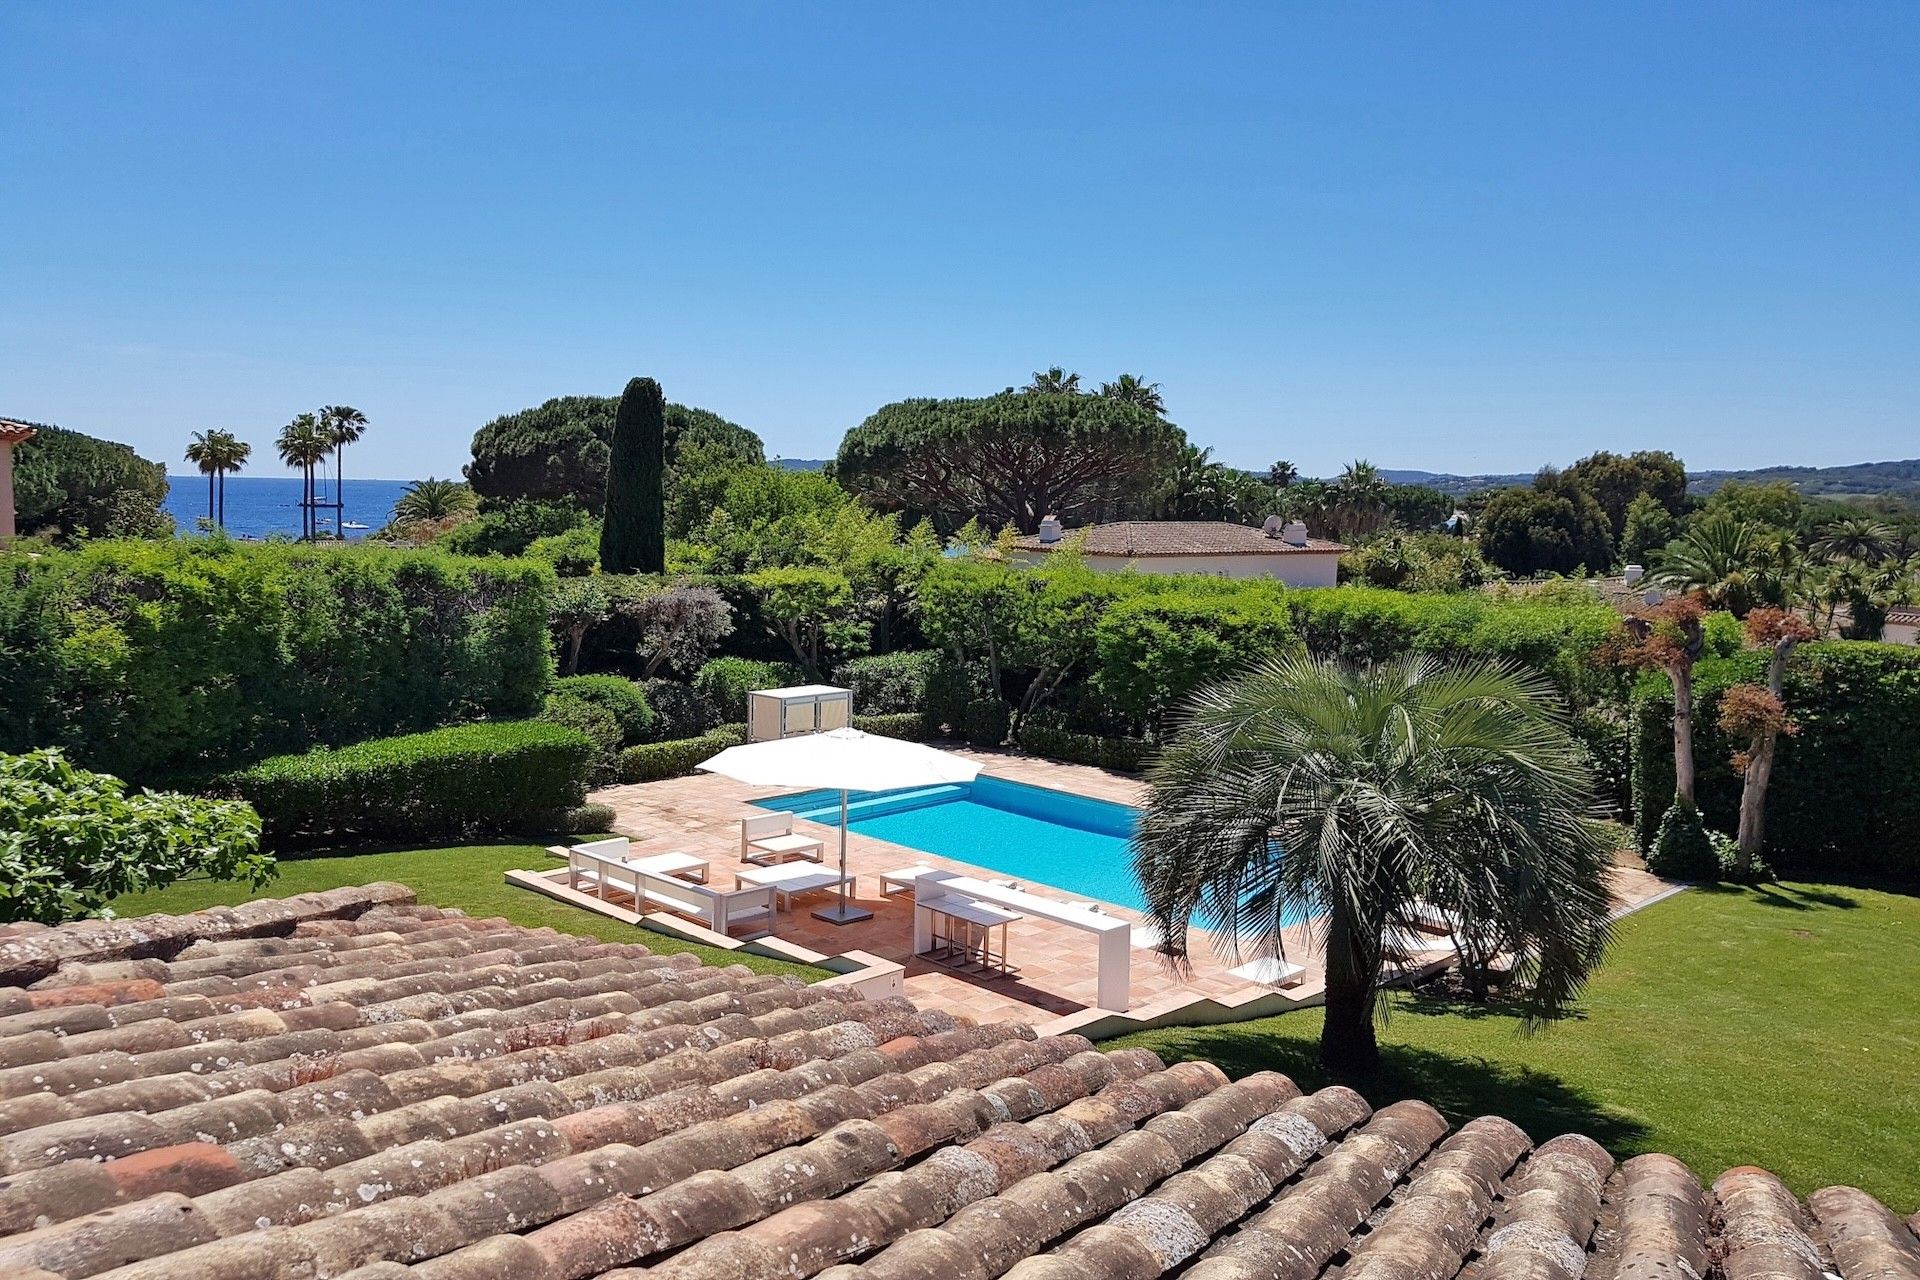 Méditerranée Location Villa in Ramatuelle, Côte d'Azur